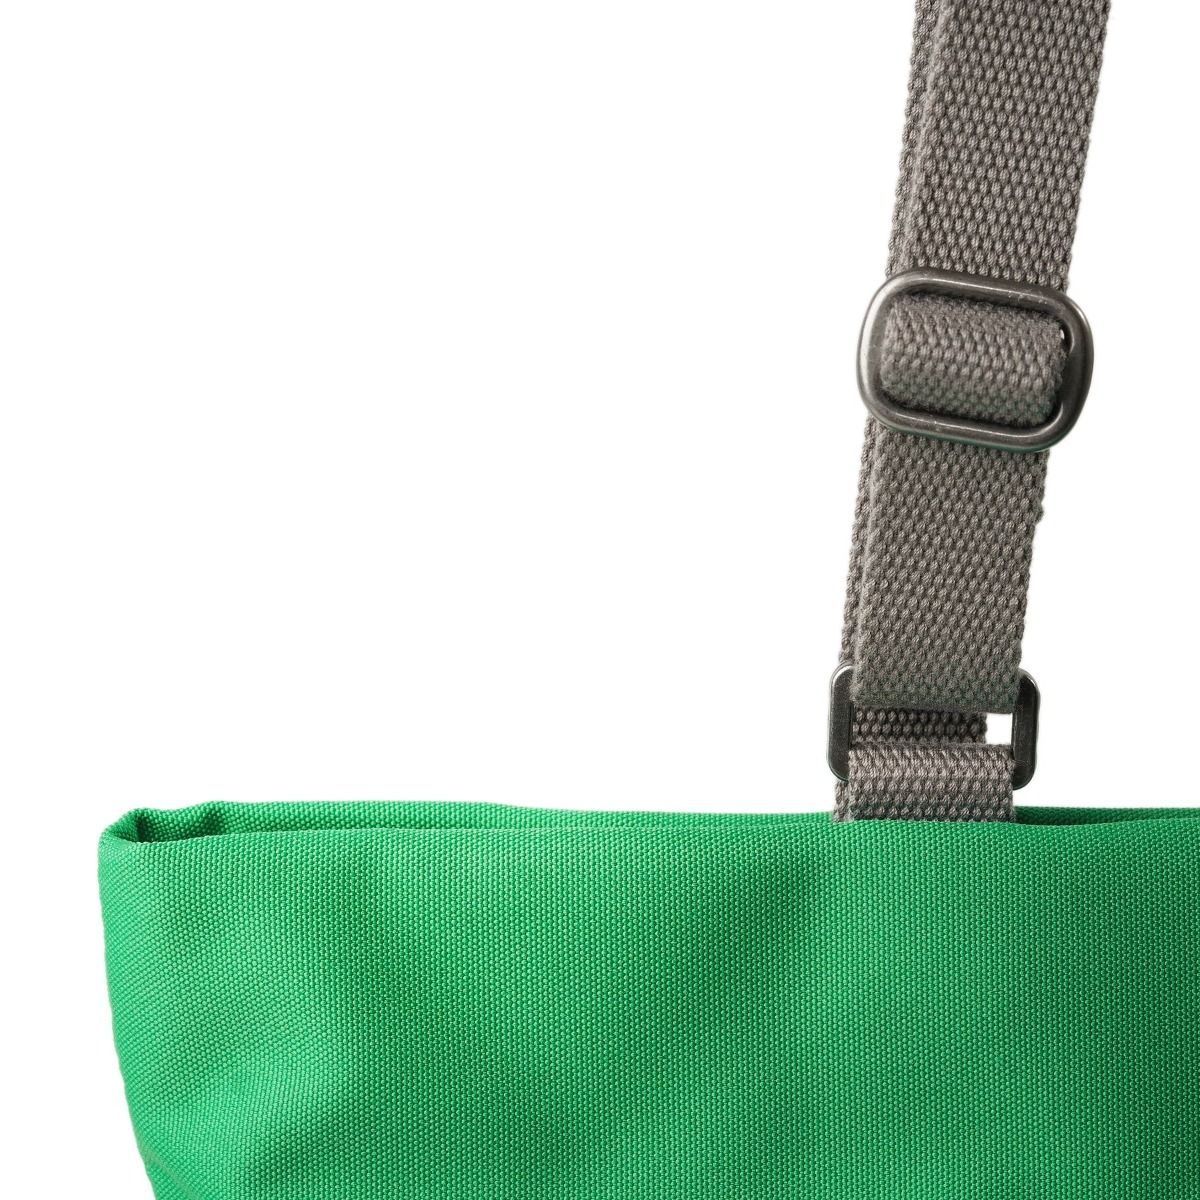 Roka Trafalgar Tote vegan bag in Mountain Green hardware